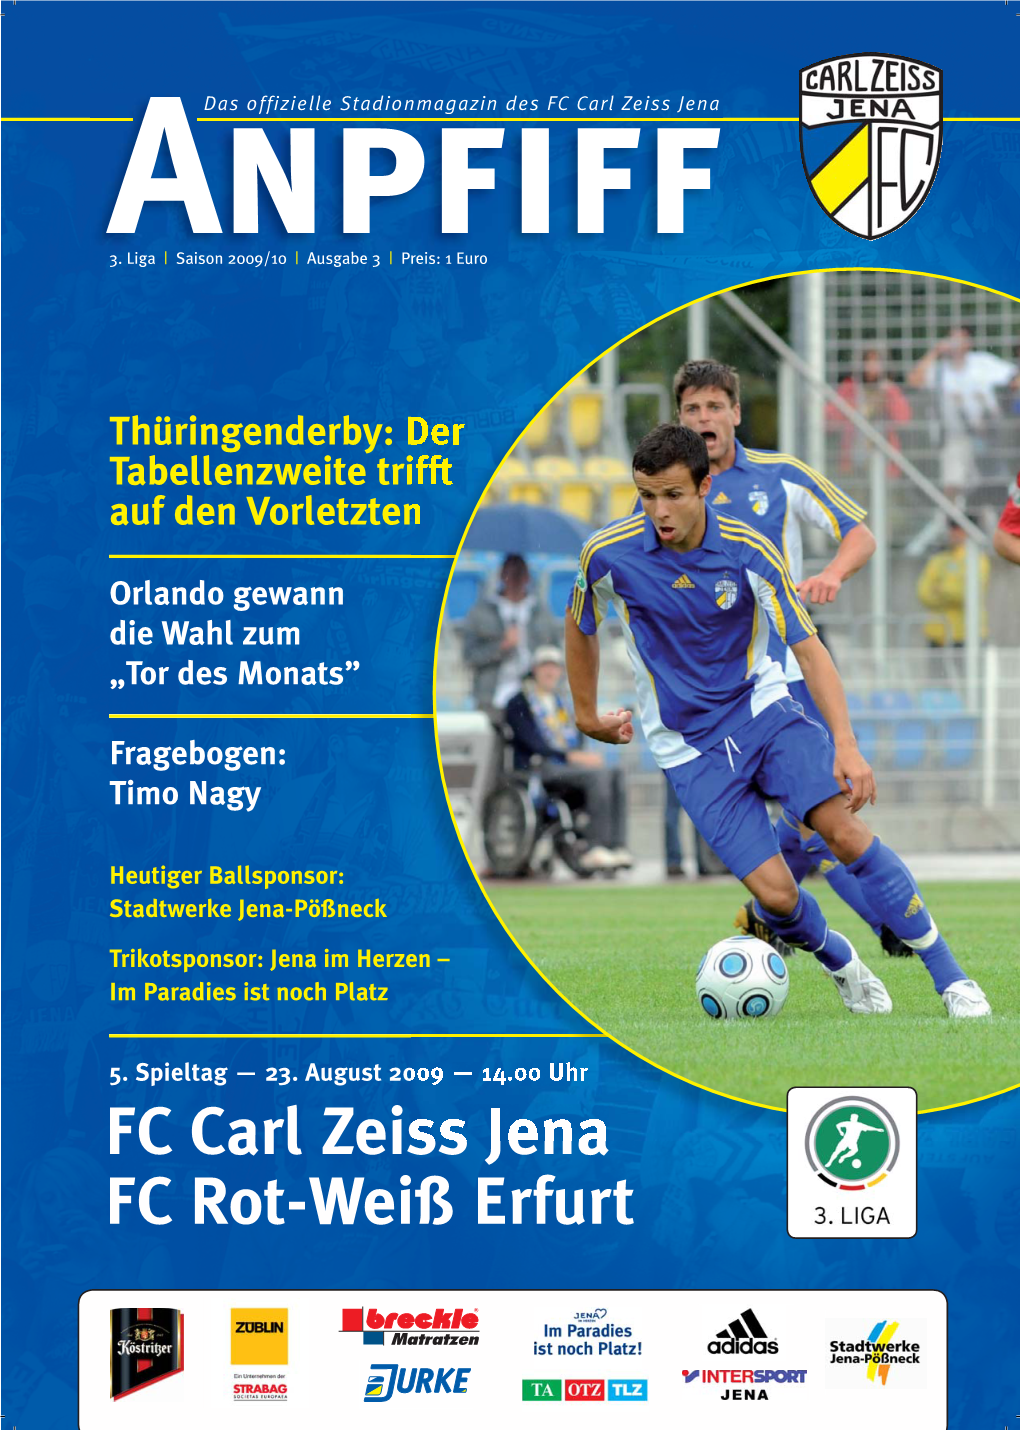 FC Carl Zeiss Jena FC Rot-Weiß Erfurt